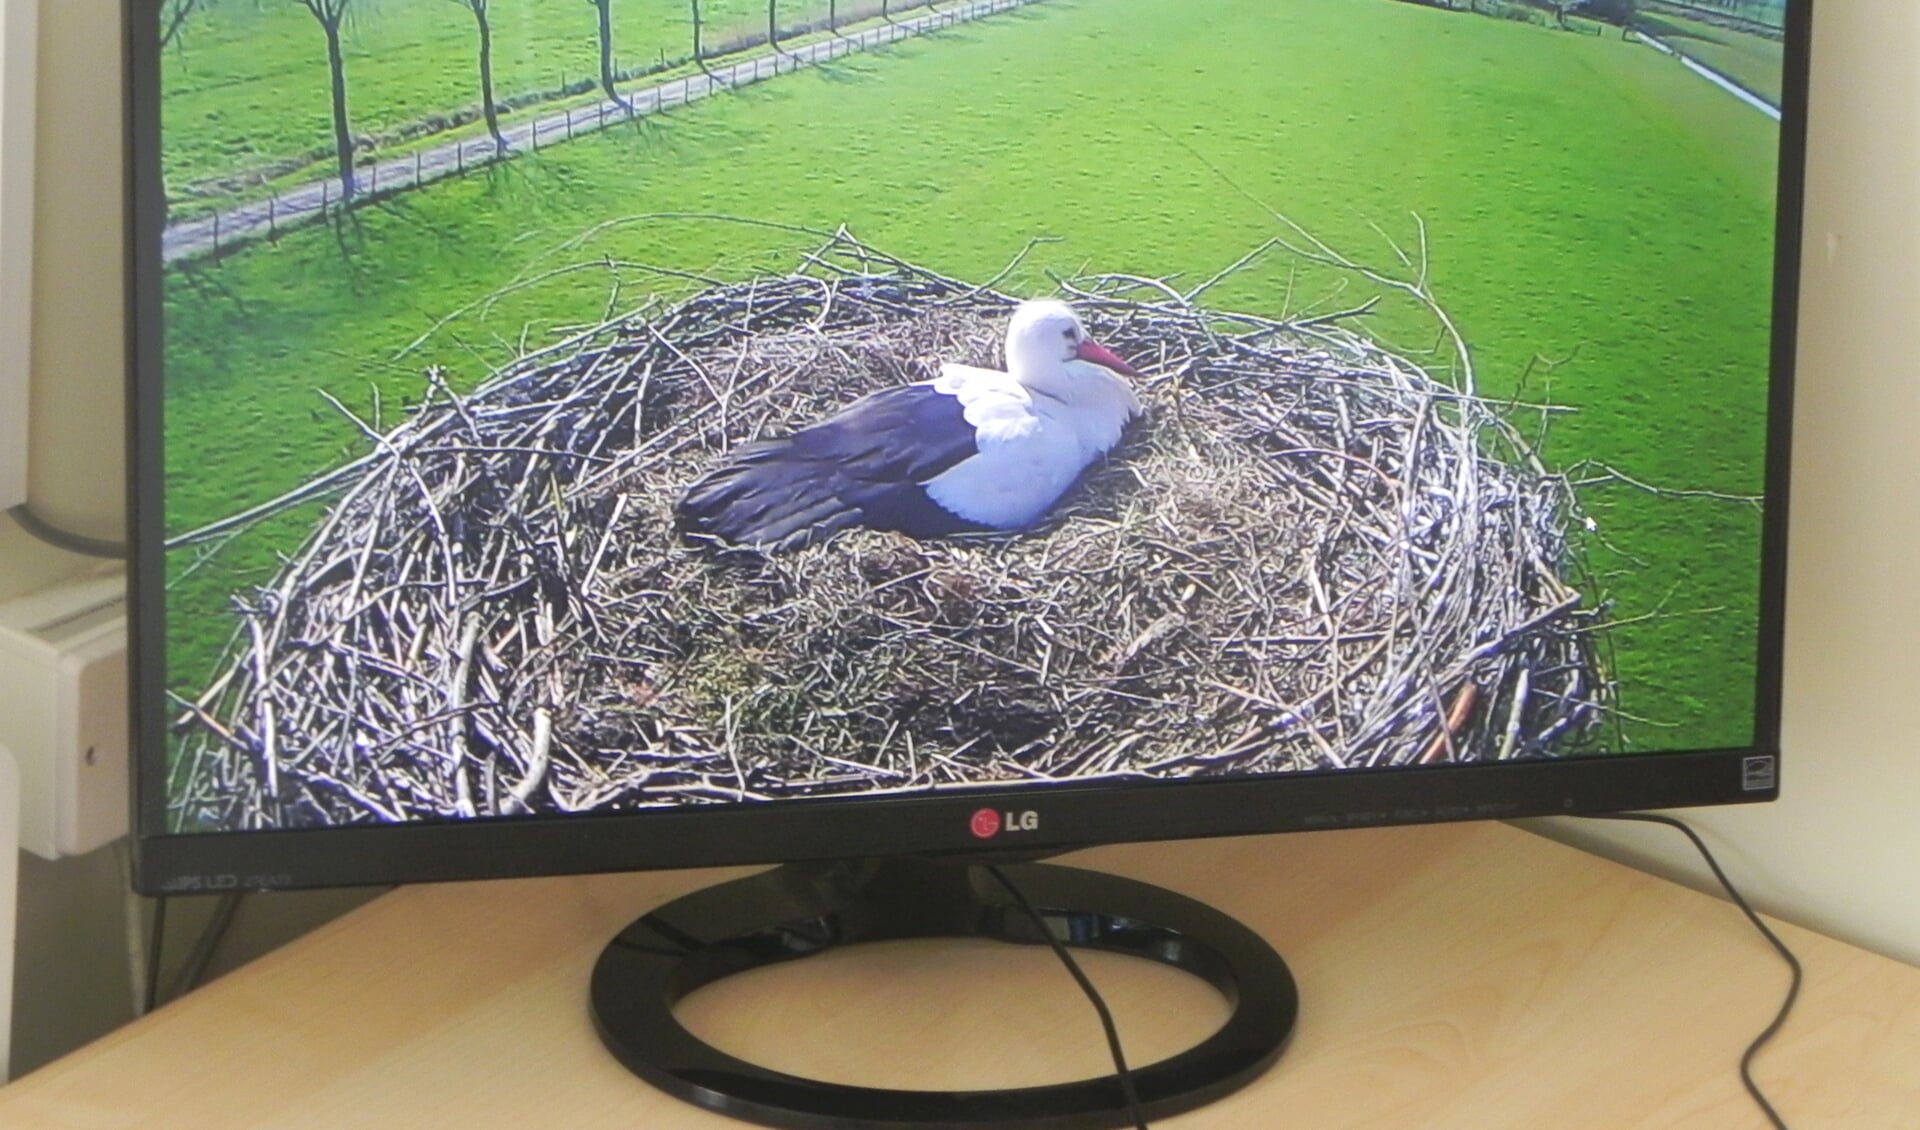 Op een groot scherm ziet Koppens het vrouwtje zitten die op 5 eieren zit te broeden.